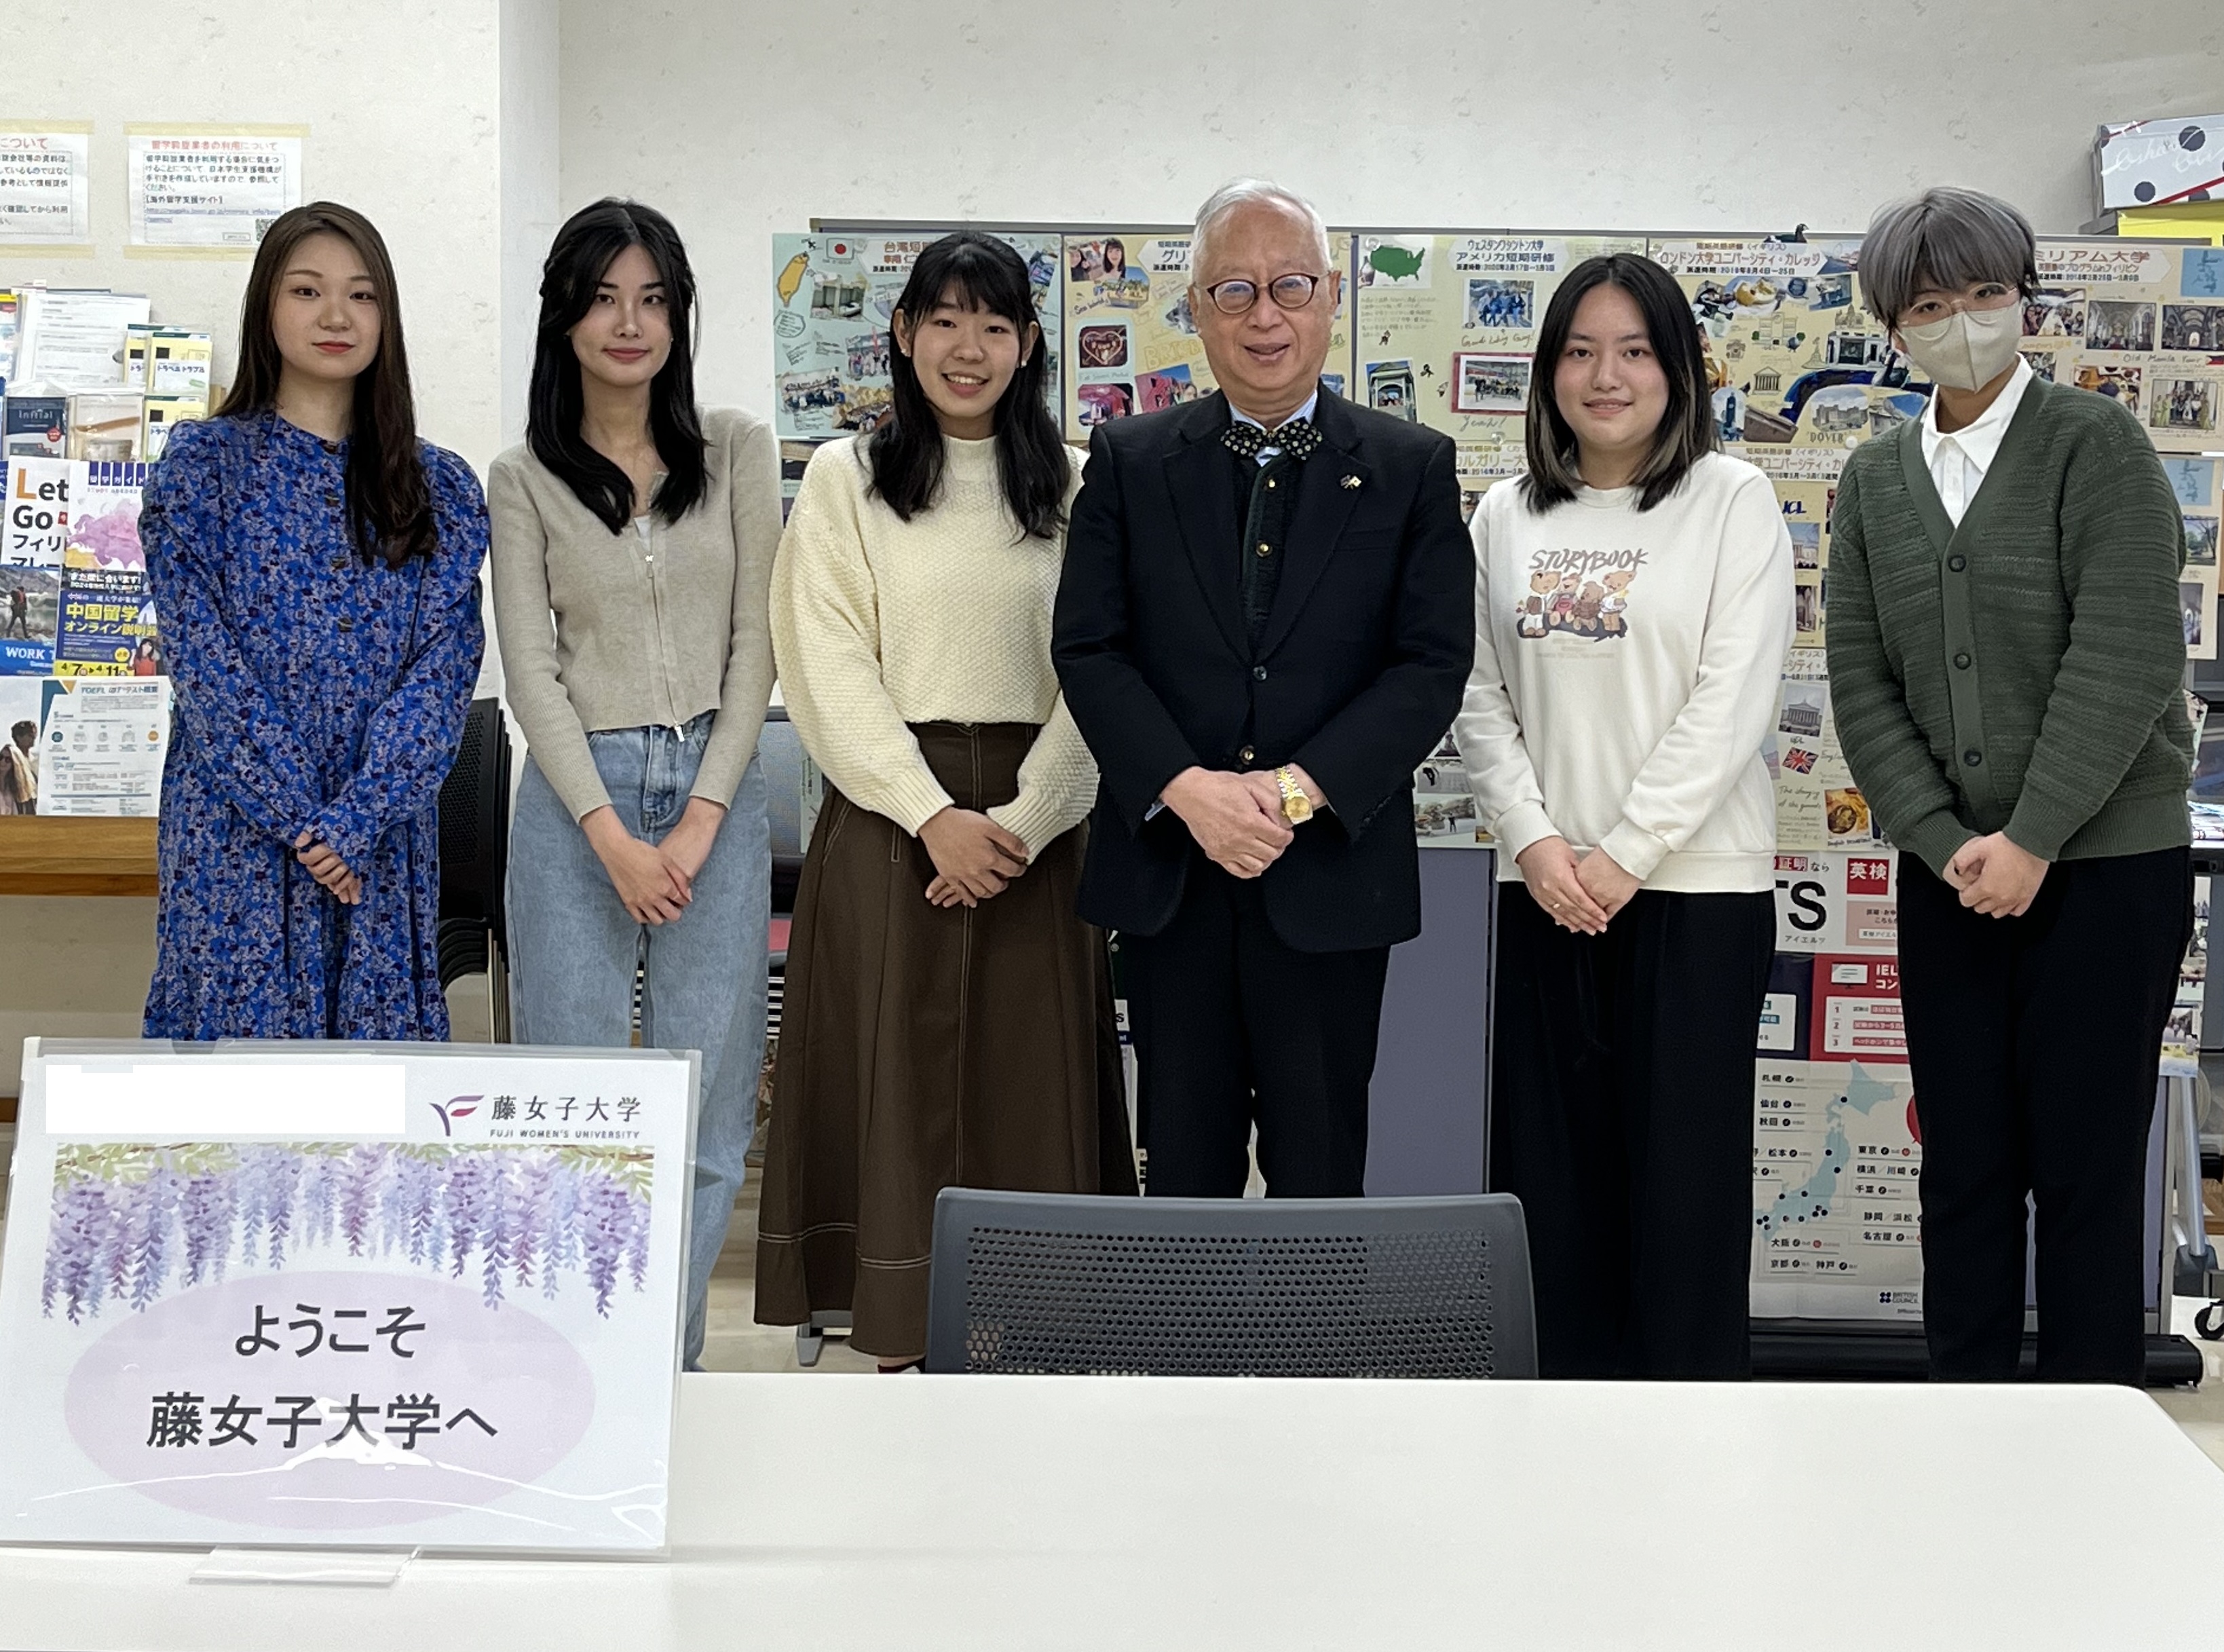  留学生の皆さん、渡邊学長、国際交流クラブ「なでしこ」のメンバー（左端）とで記念撮影